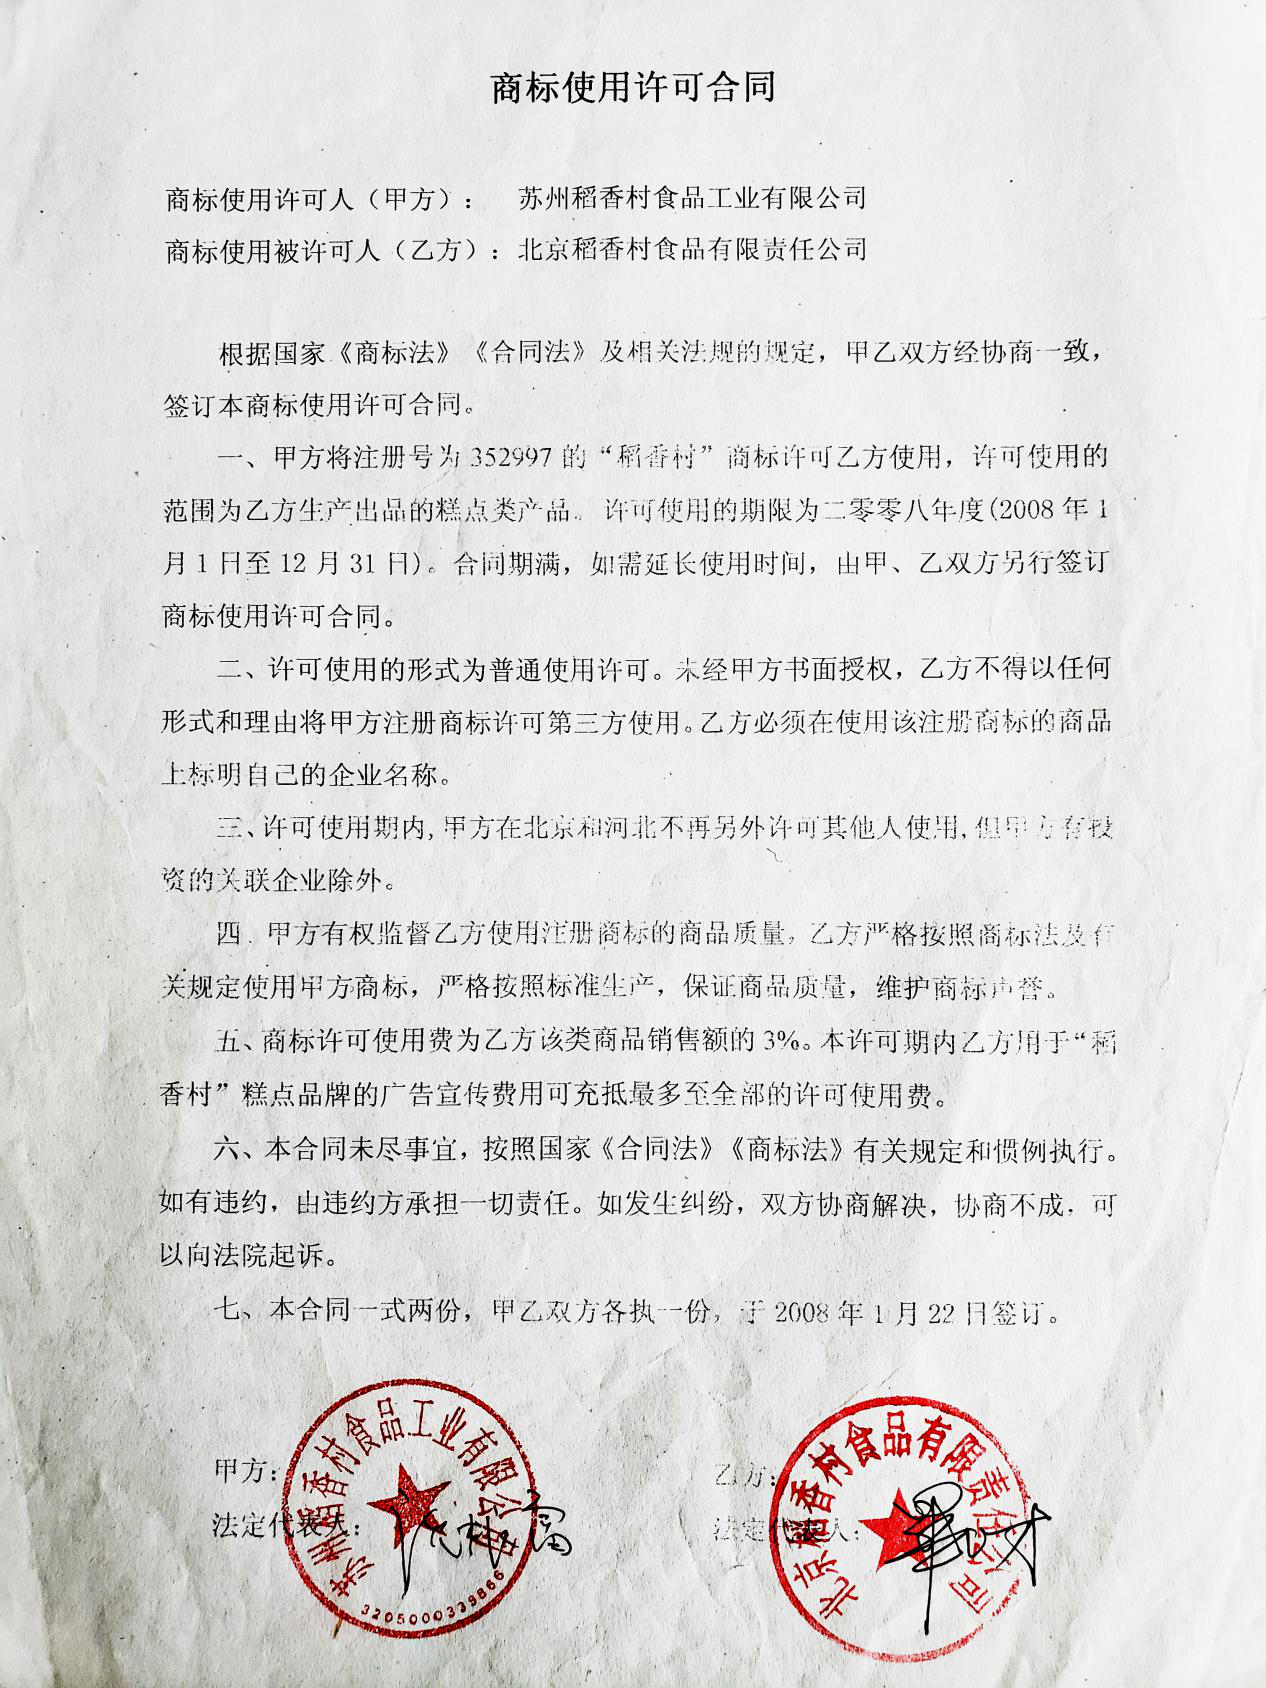 苏州稻香村授权北京稻香村使用商标的《商标使用许可合同》(源自网络)